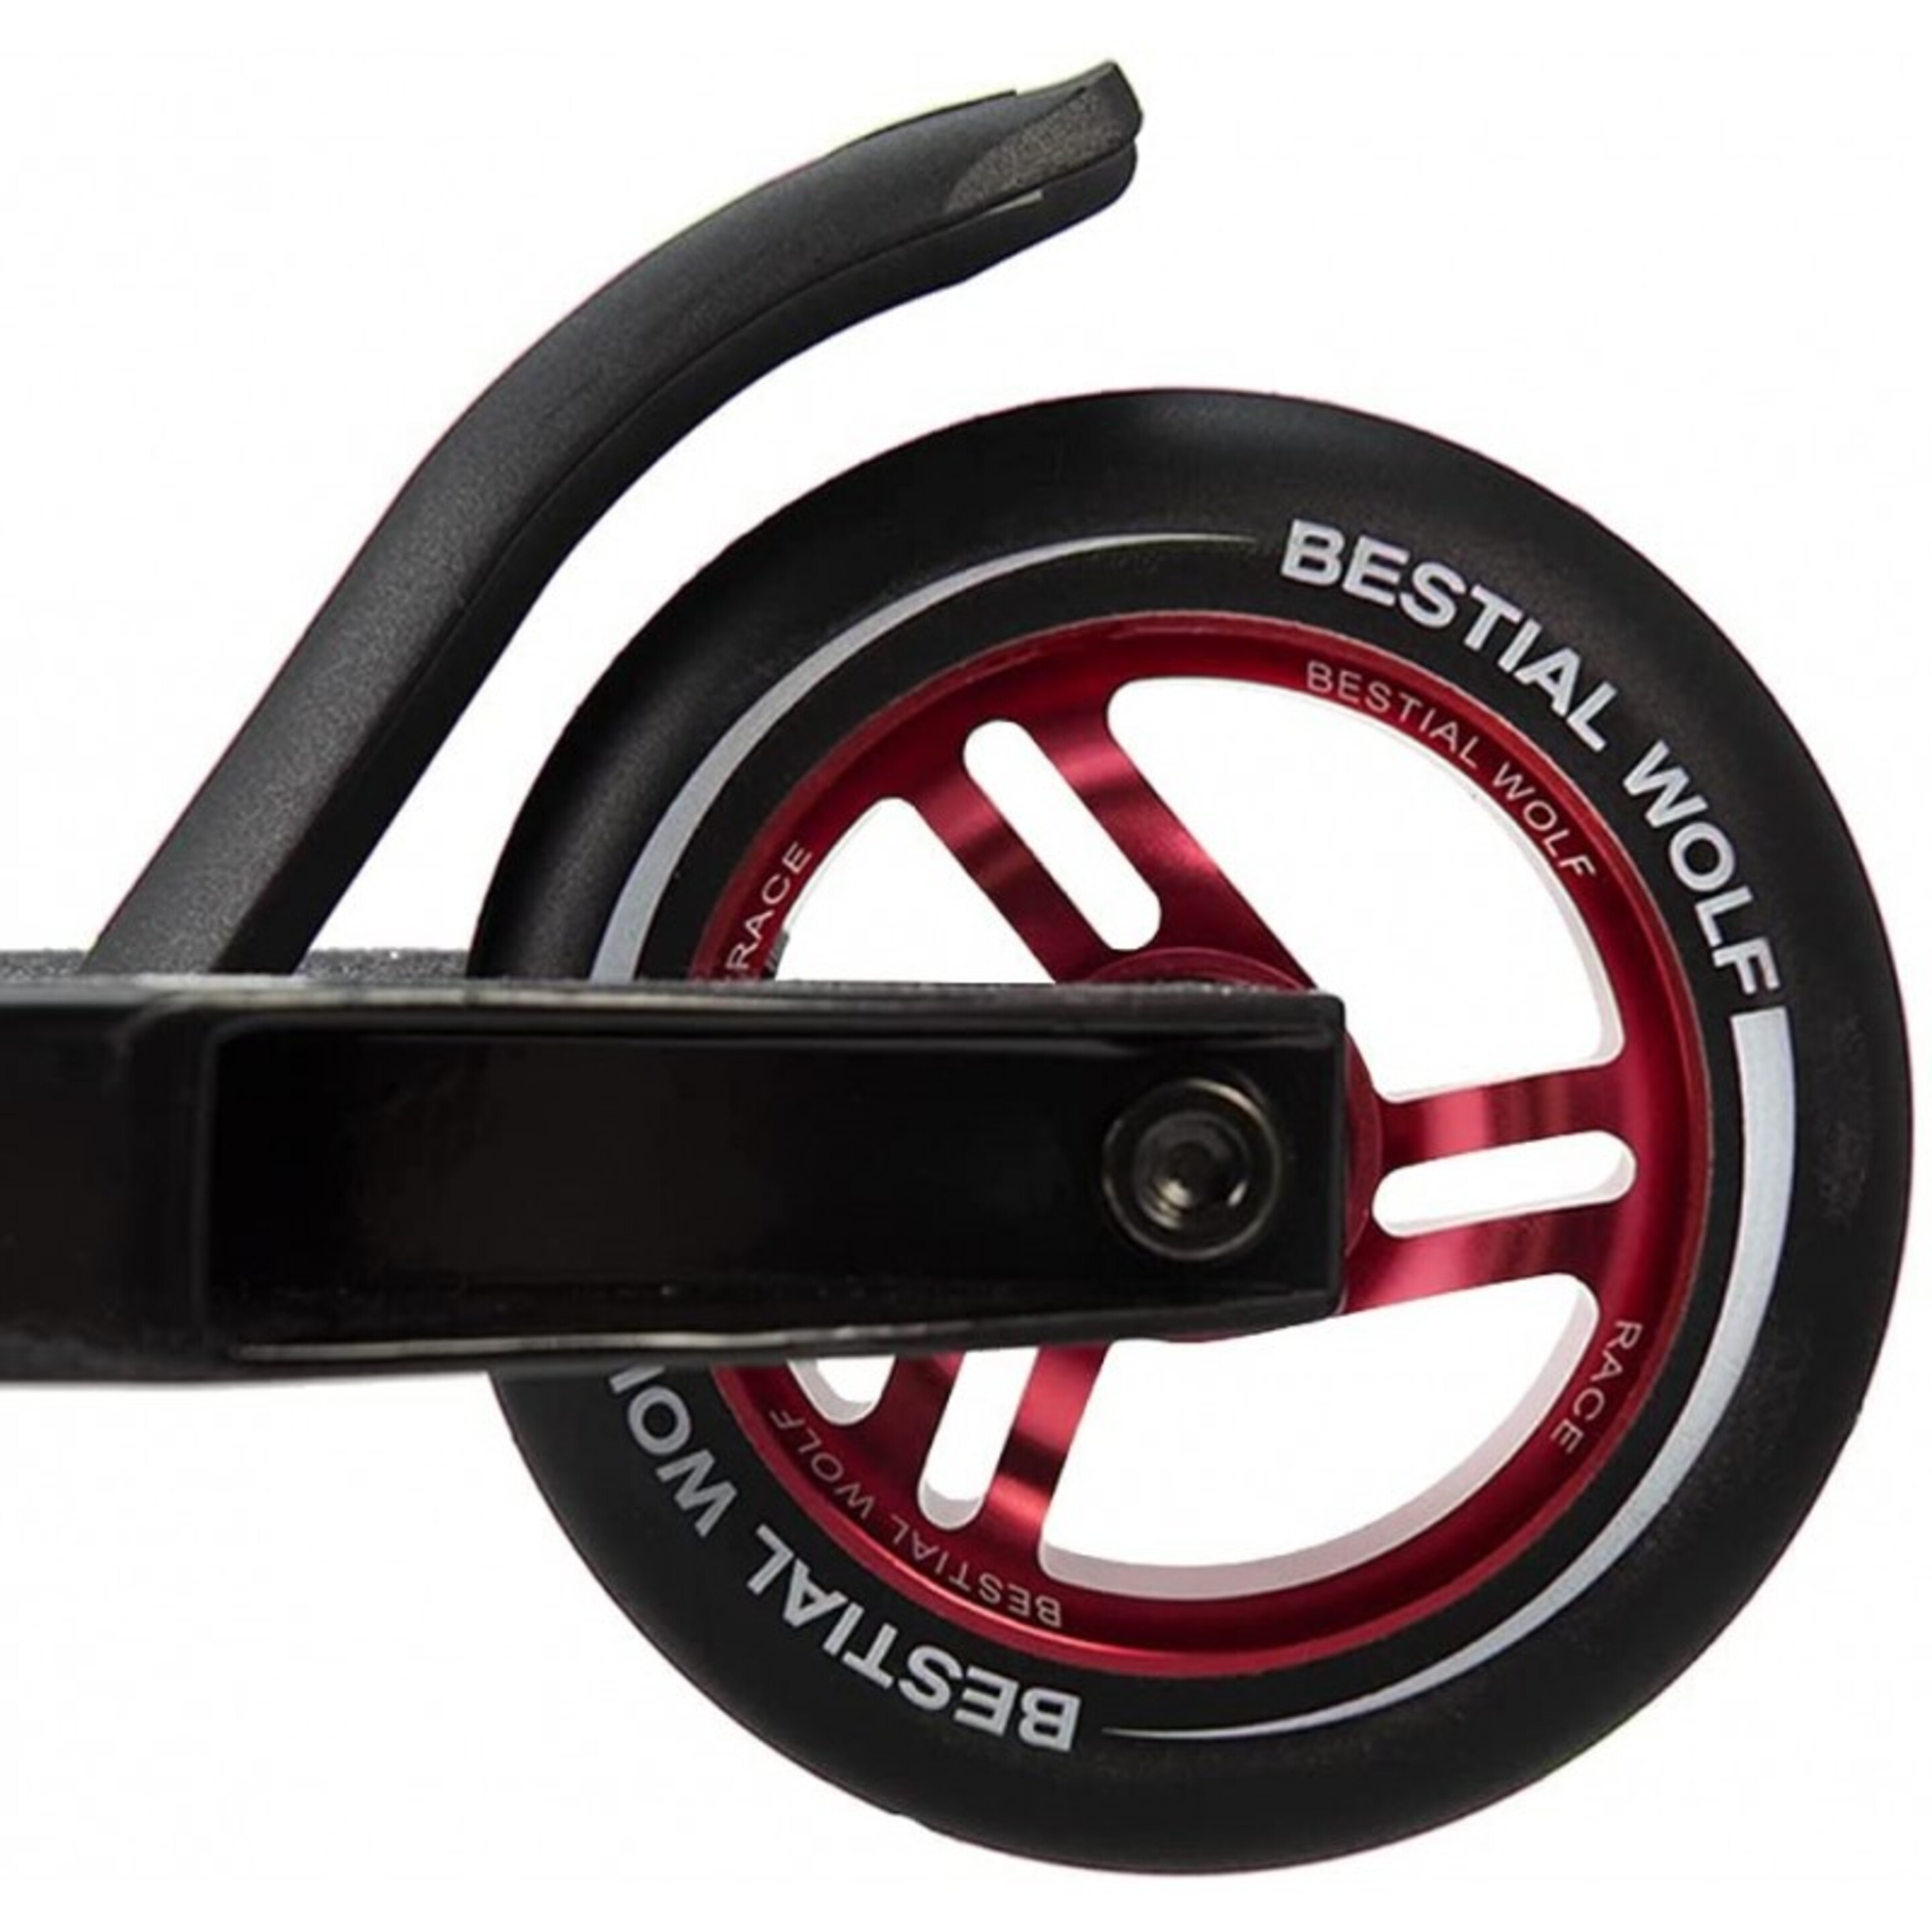 Bestial Wolf Race Wheel Core Black 100mm